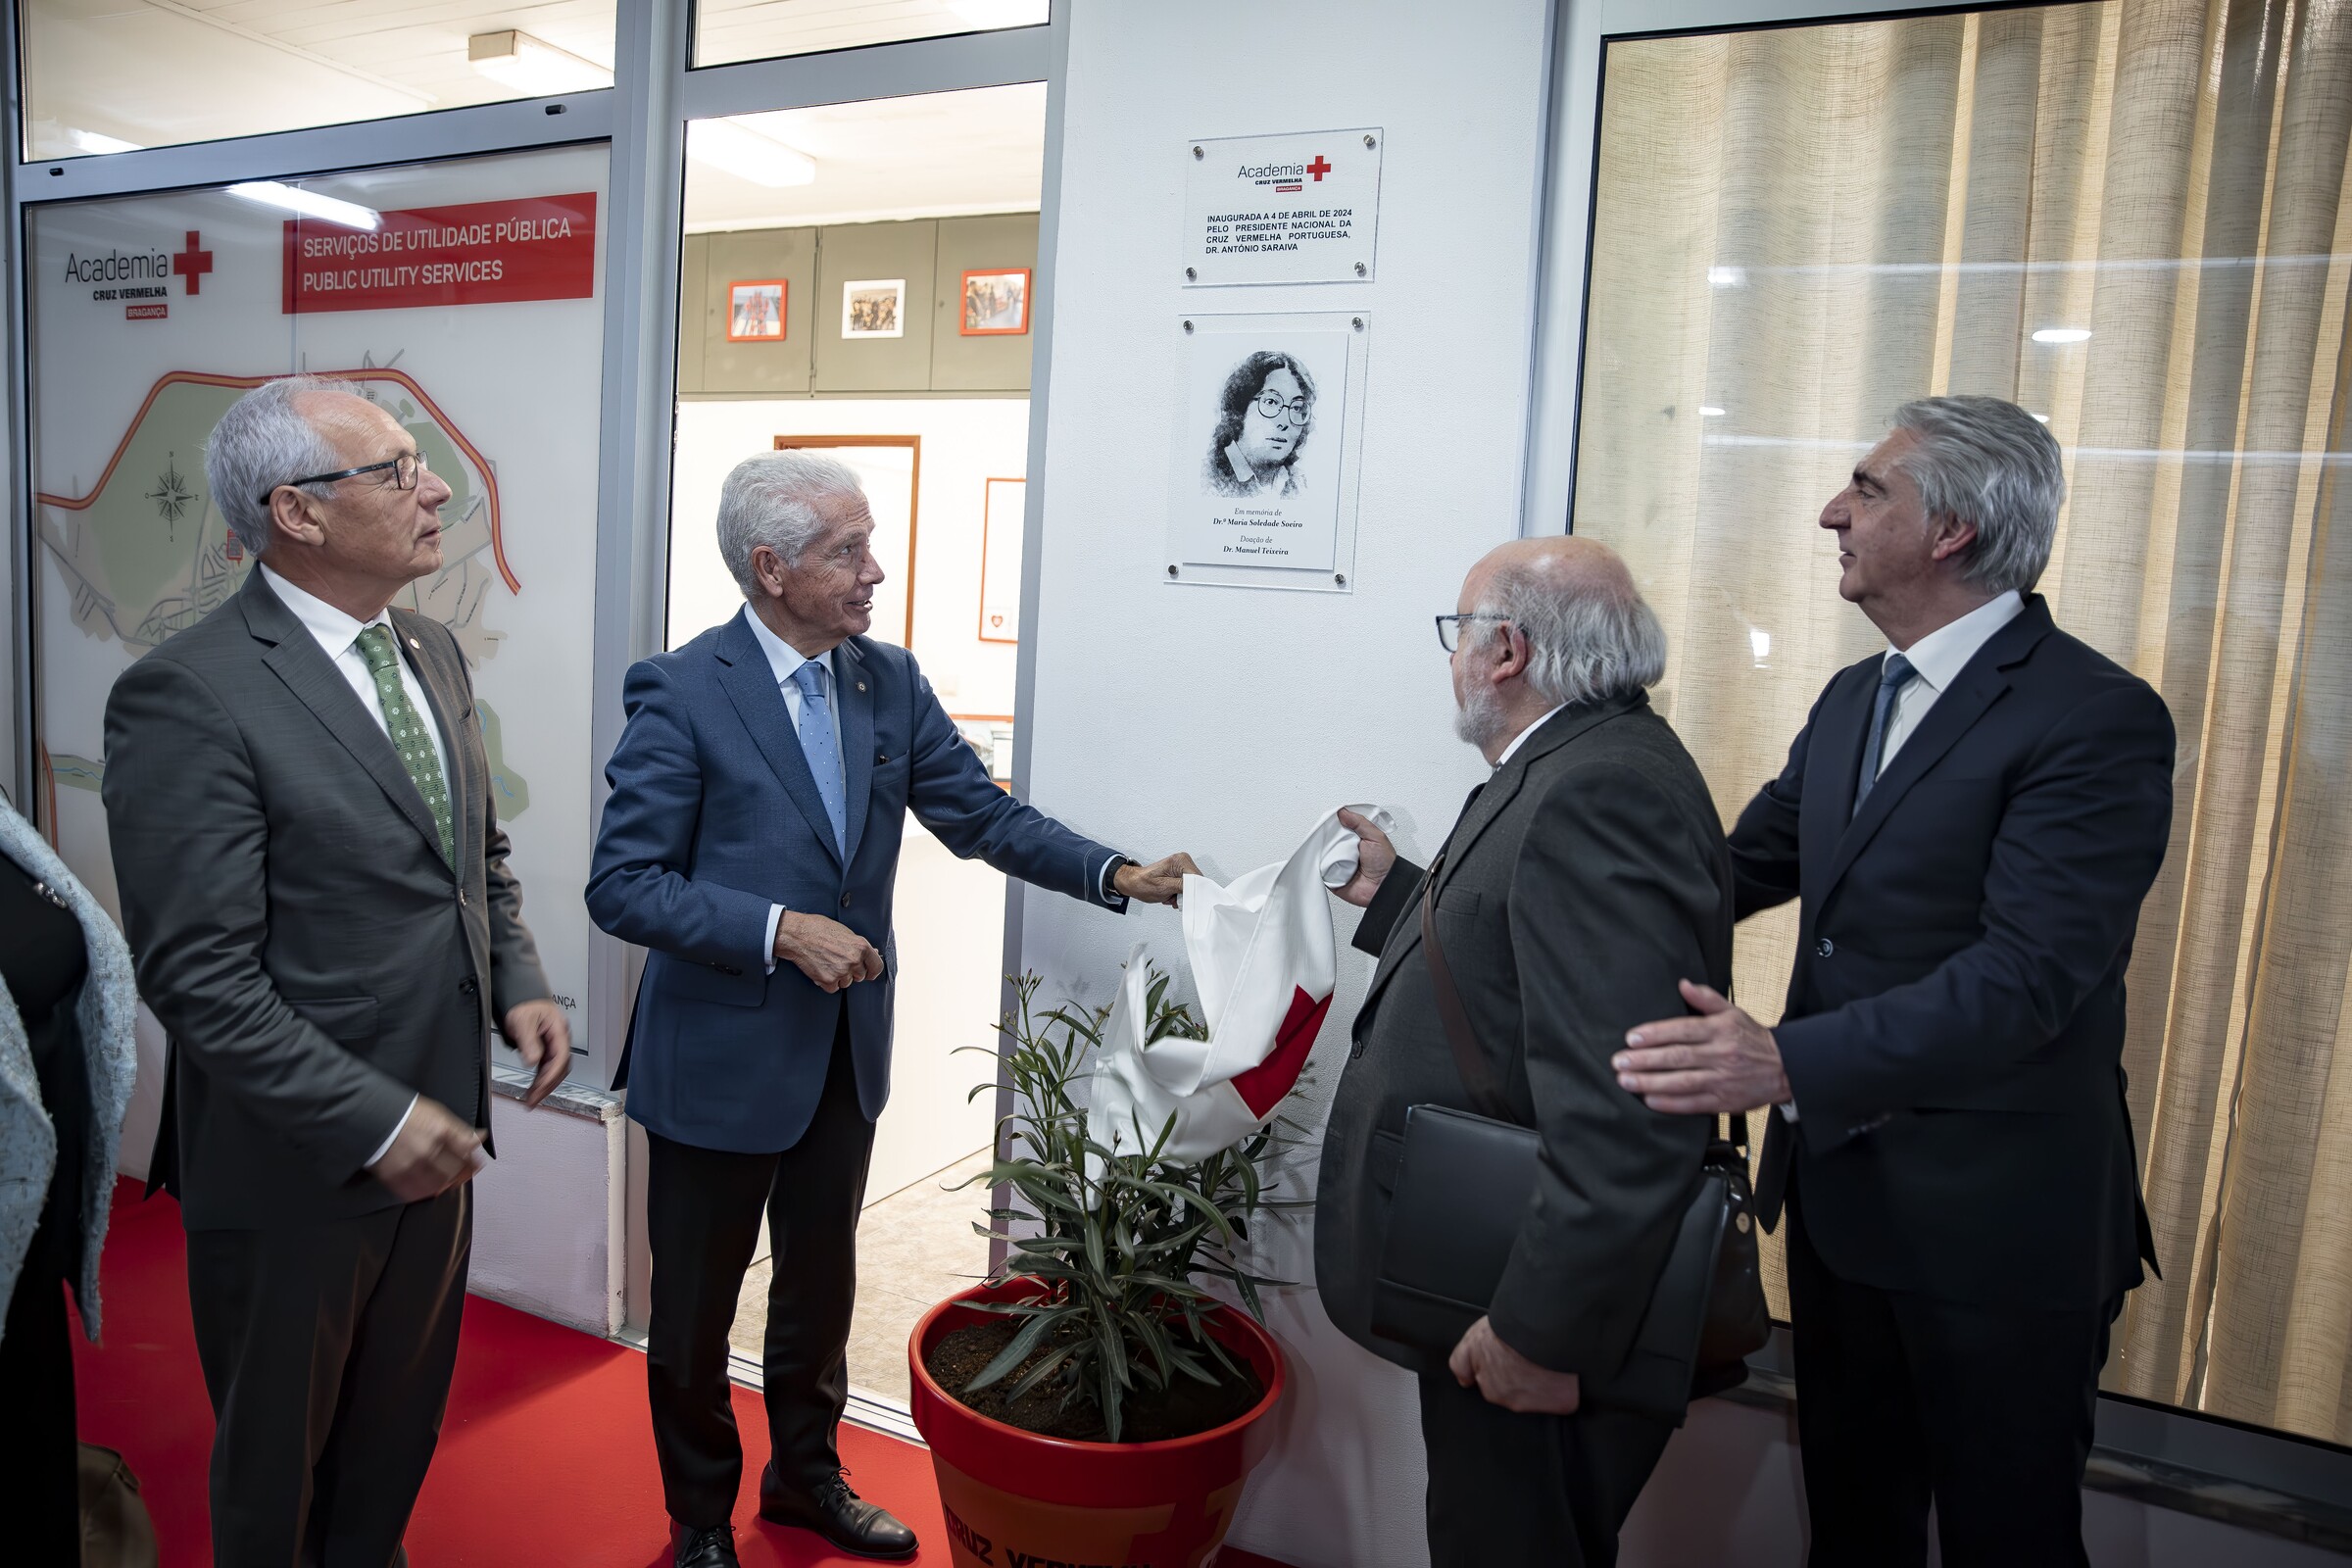 Cruz Vermelha de Bragança inaugura Academia e celebra protocolos de cooperação